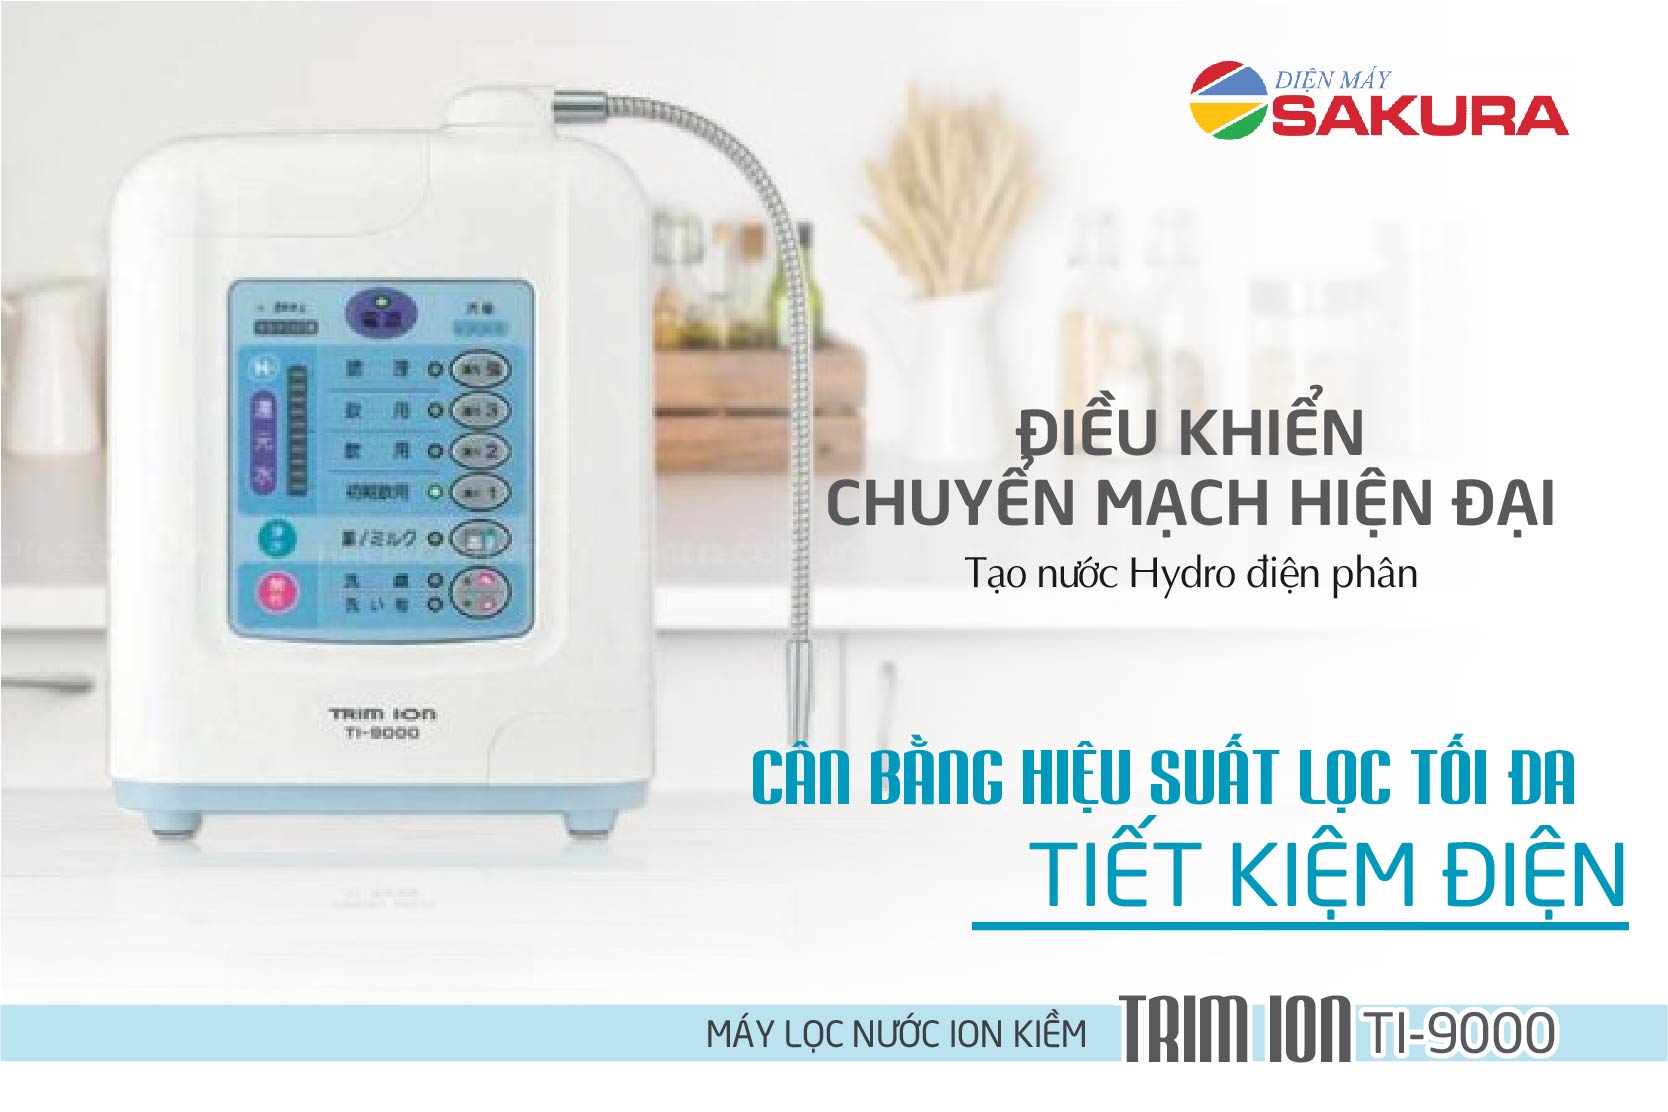 Máy lọc nước ion kiềm TRIM ION TI-9000 điều khiển chuyển mạch hiện đại của máy lọc nước TRIM ION TI 9000